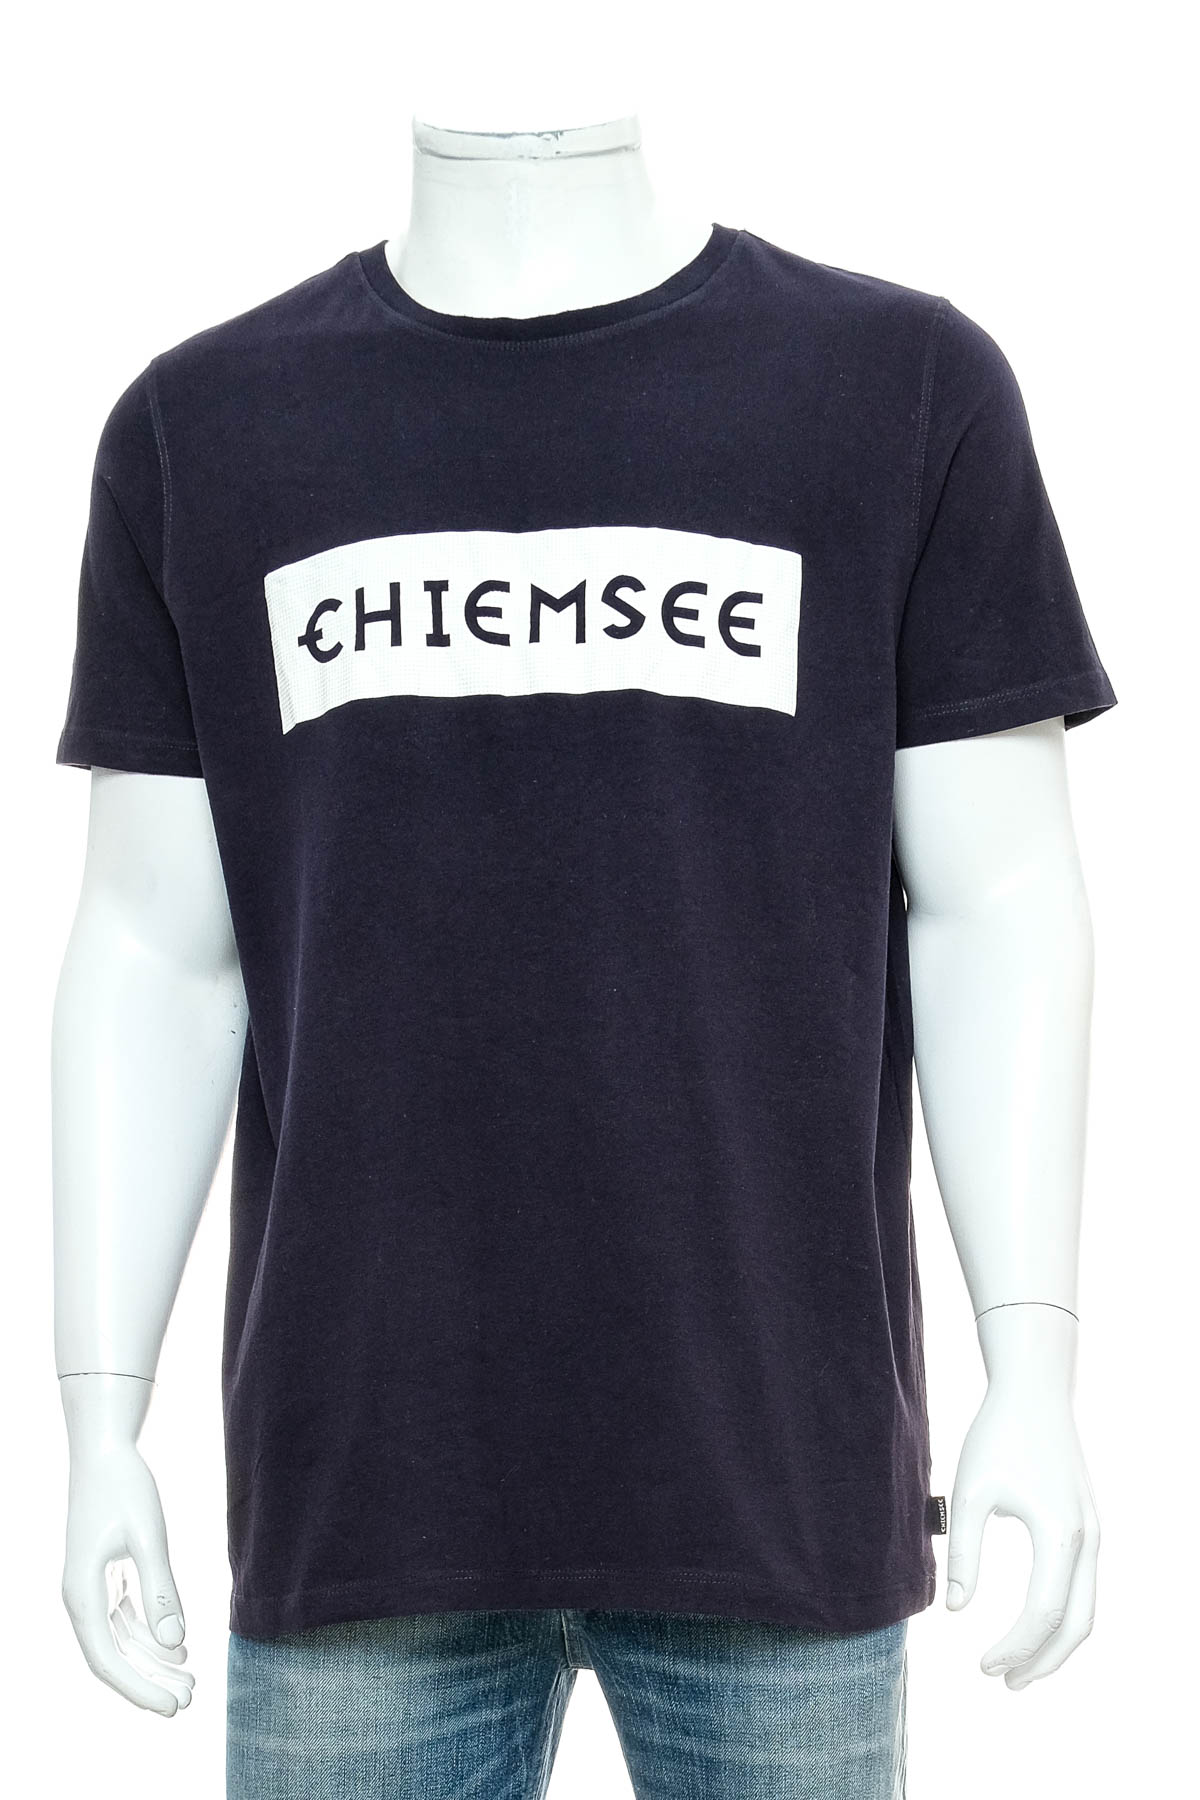 Αντρική μπλούζα - Chiemsee - 0